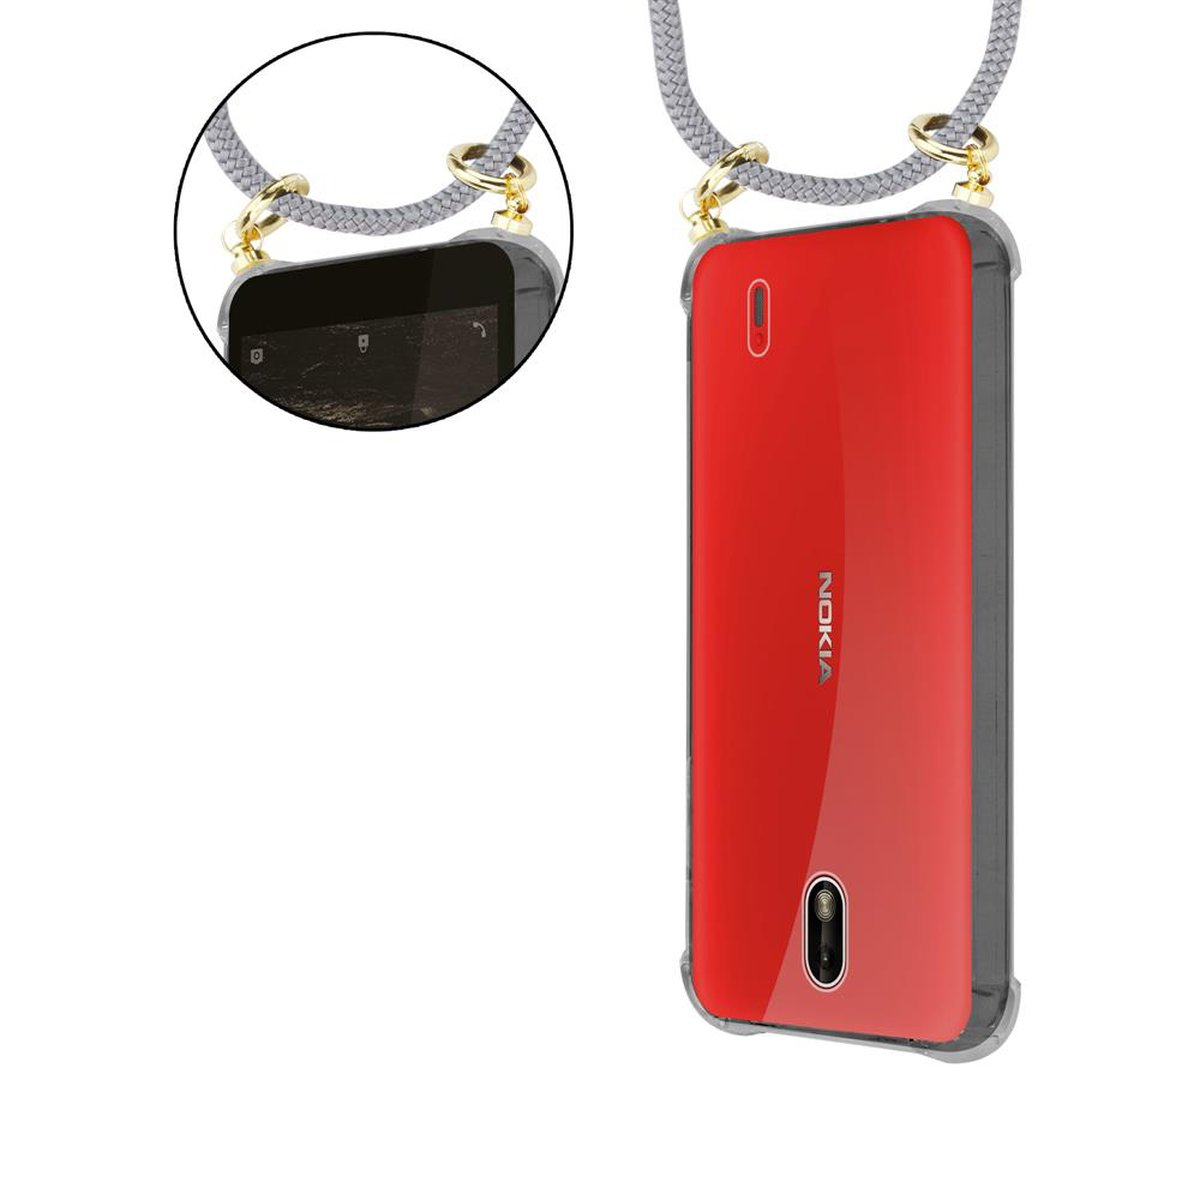 CADORABO Handy Kette 1 Hülle, abnehmbarer Kordel mit Nokia, Gold Backcover, 2018, SILBER Band Ringen, und GRAU